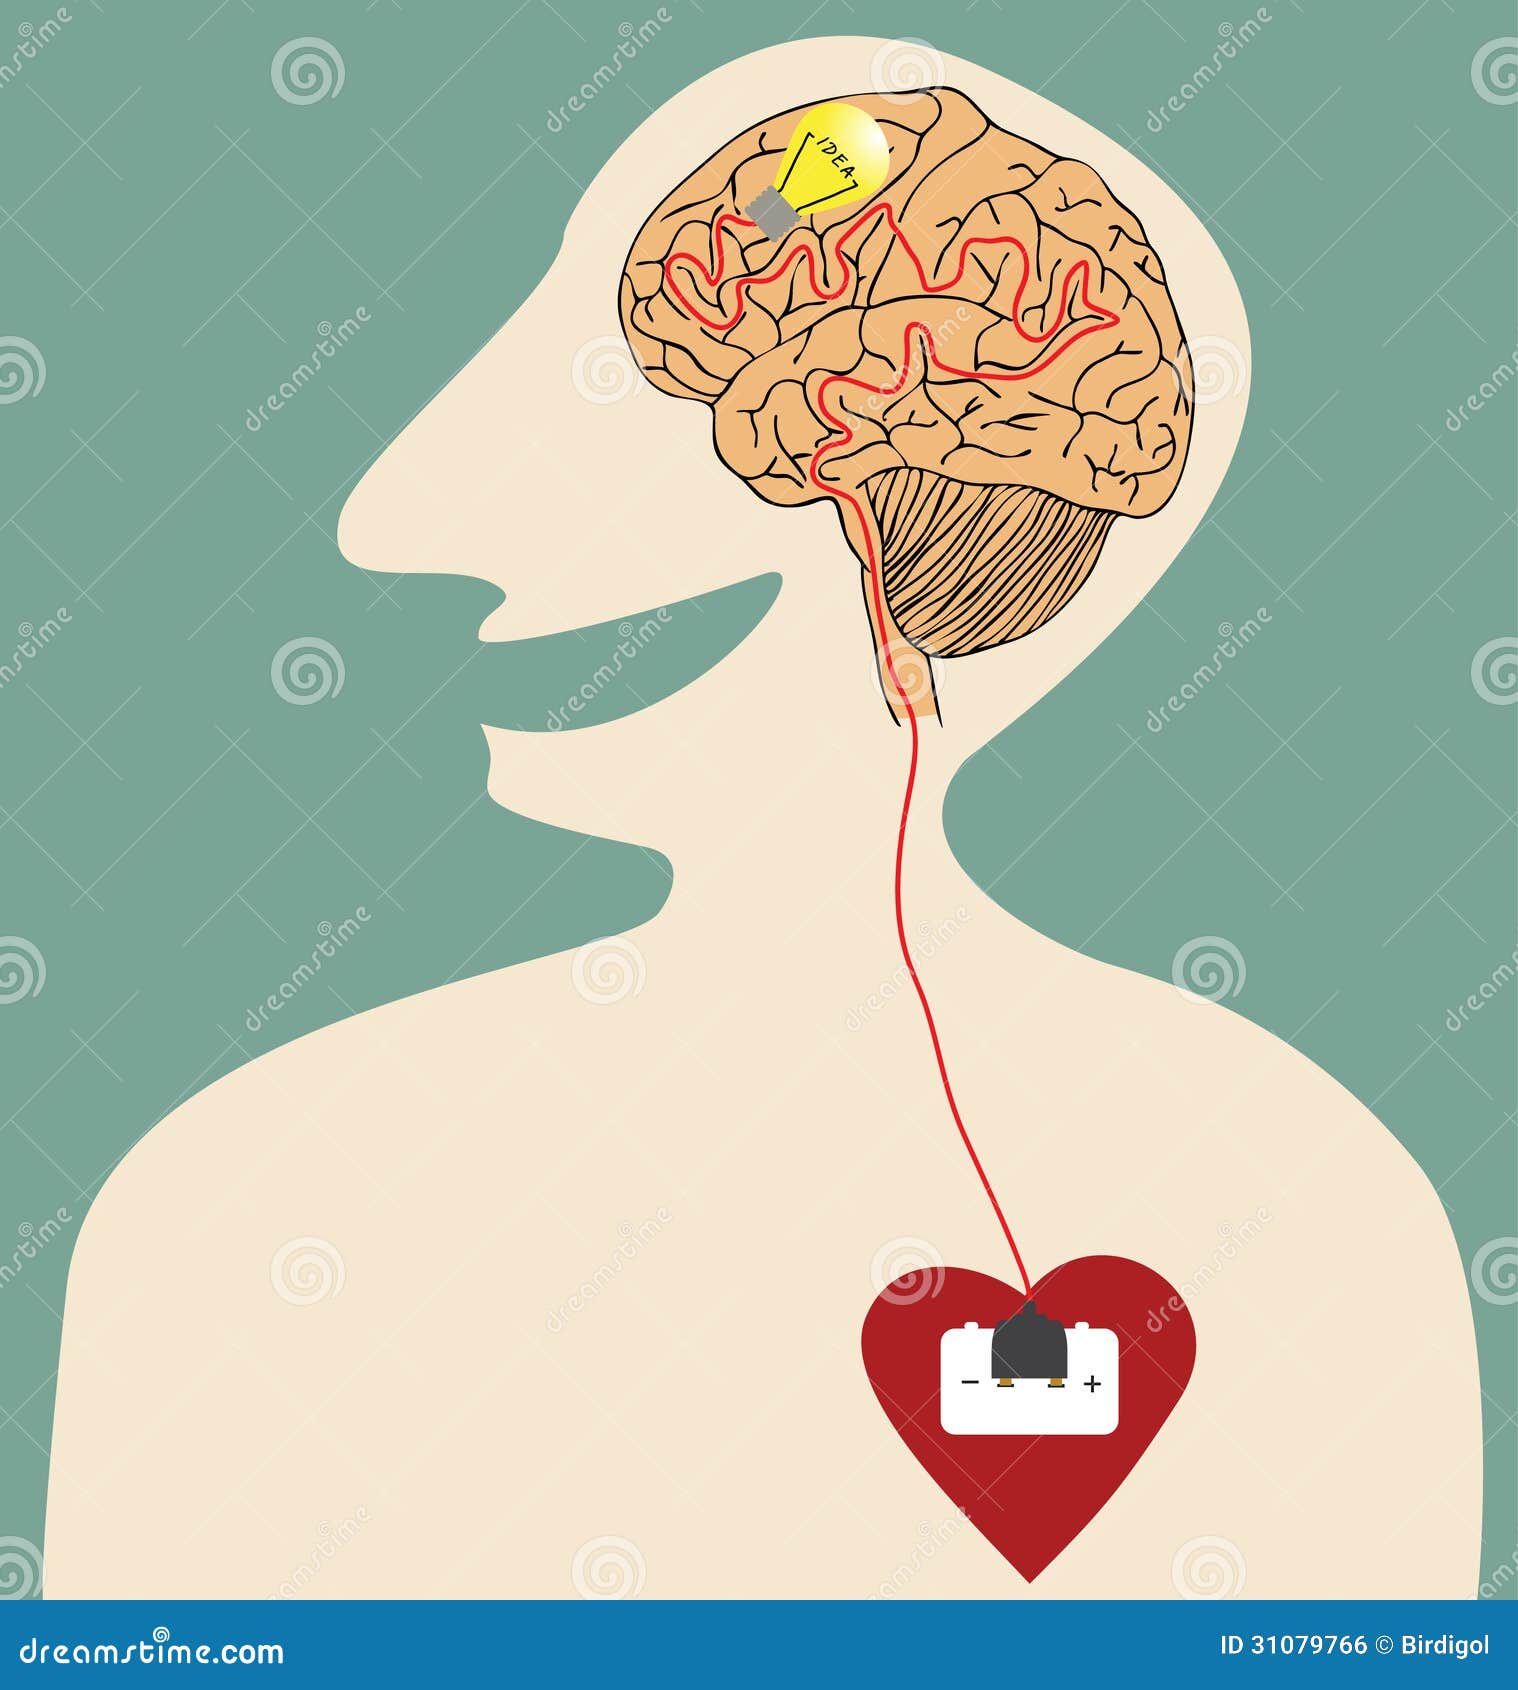 У сердца есть мозг. Мозг и сердце. Мозг и сердце вместе. Сердце и мозг человека. Мозг и сердце арт.